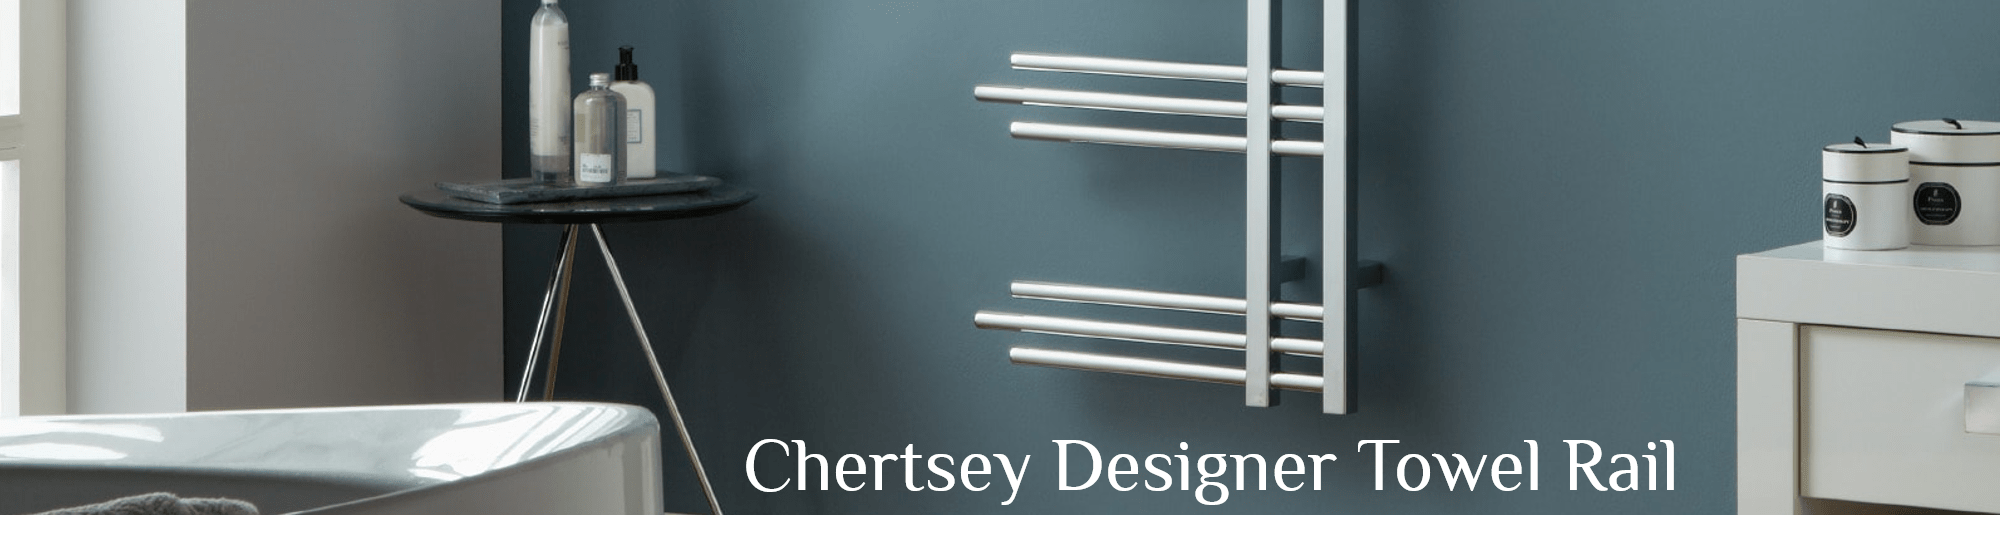 Chertsey Chrome Designer Towel Rail Designer Bathroom Radiator